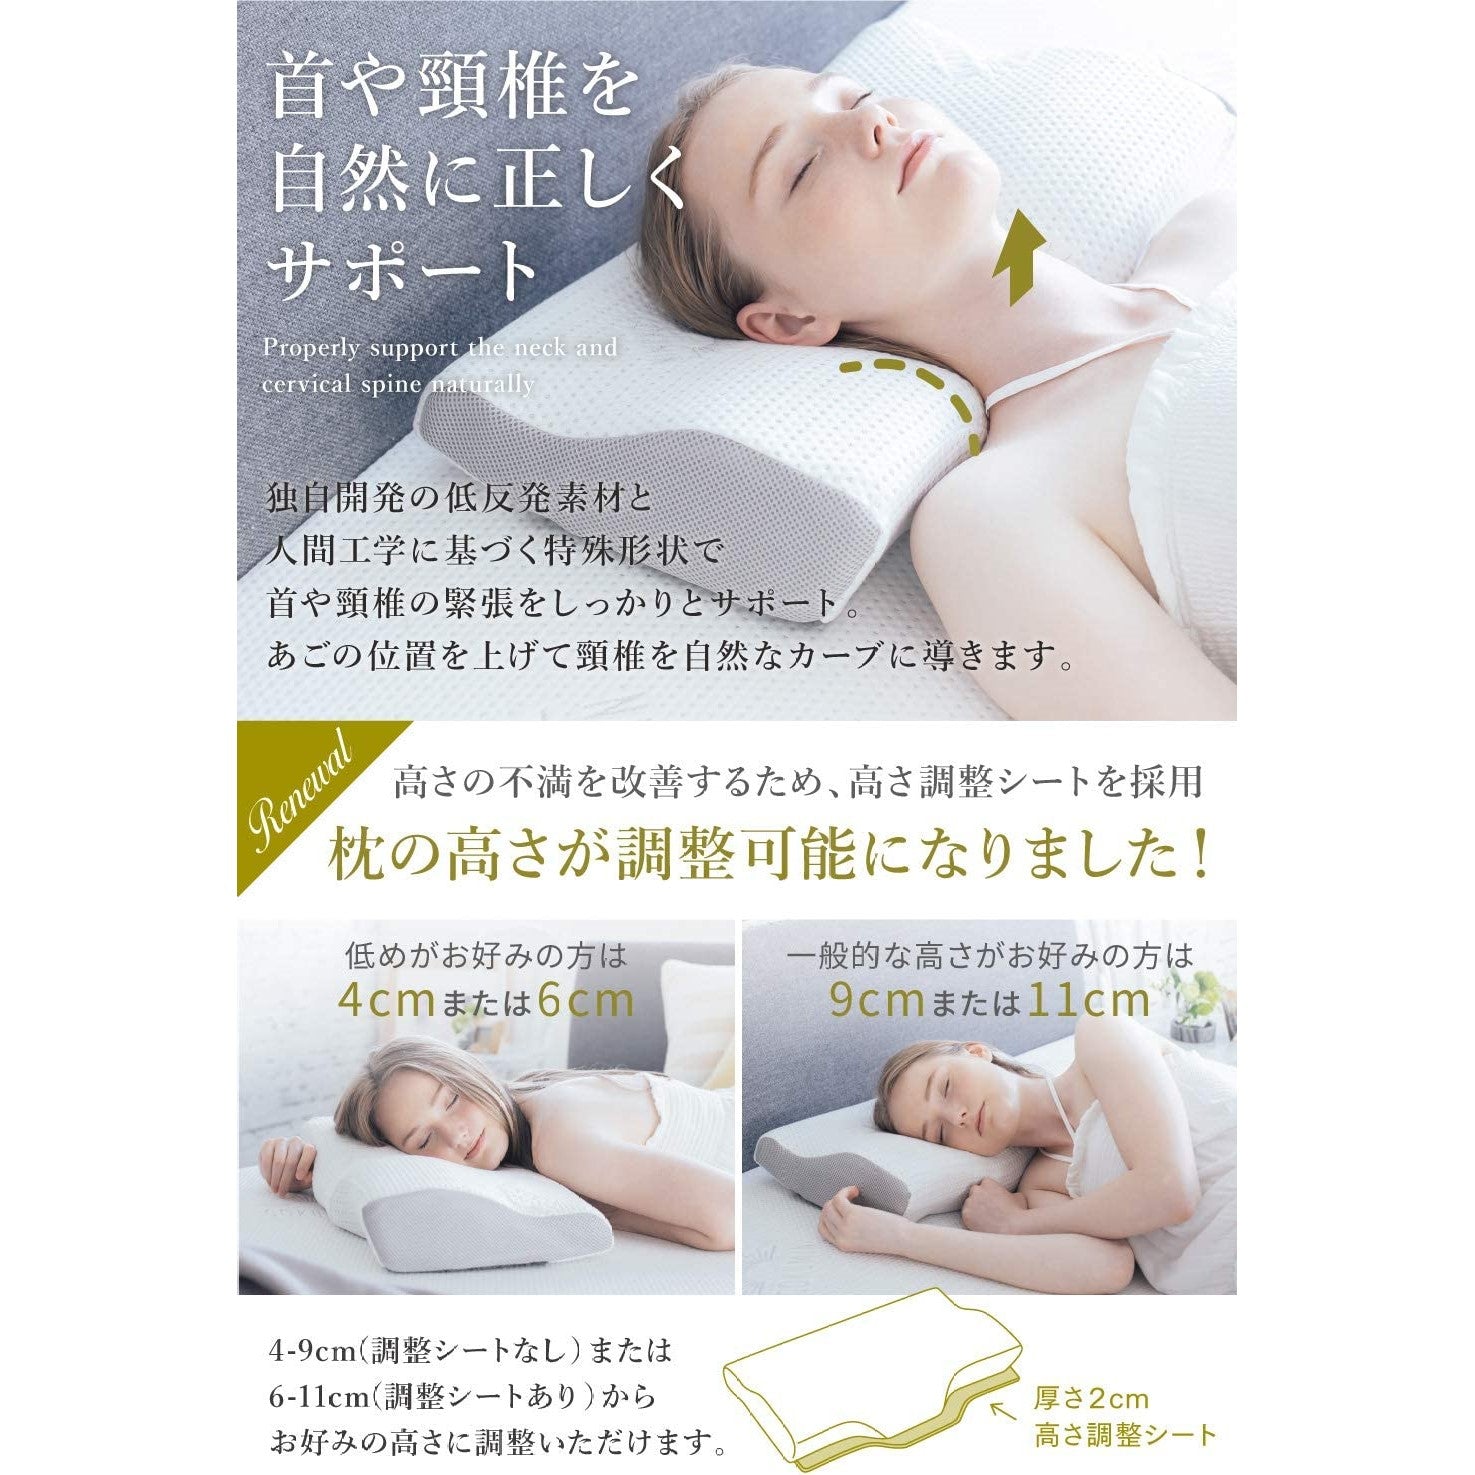 Women's Wireless Bra (Made in Japan)